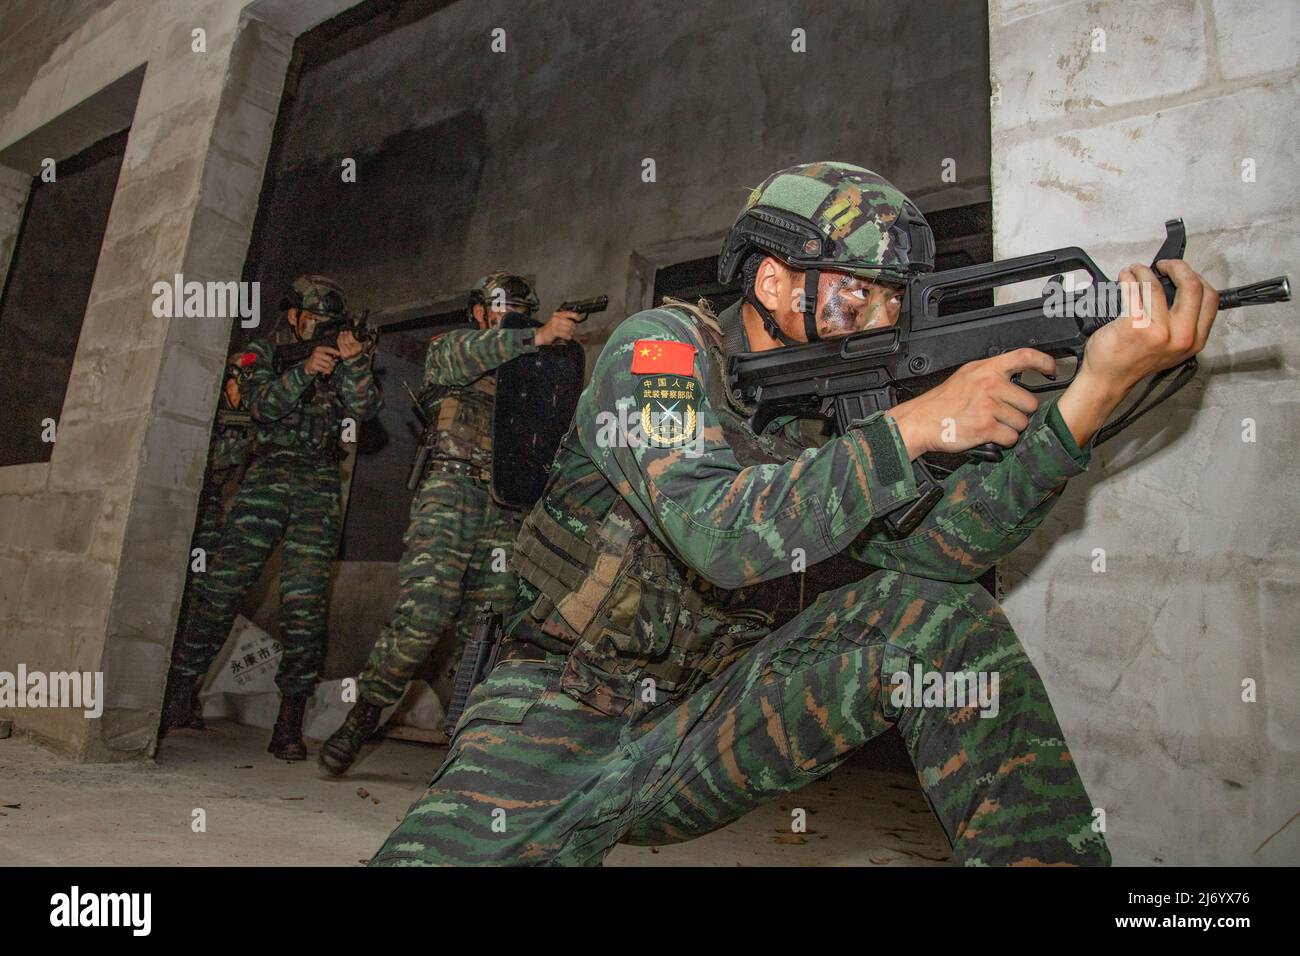 NANNING, CHINA - 5. MAI 2022 - Soldaten der Spezialeinheiten trainieren während einer echten Kampfübung in Nanning, dem autonomen Regi Guangxi Zhuang in Südchina Stockfoto